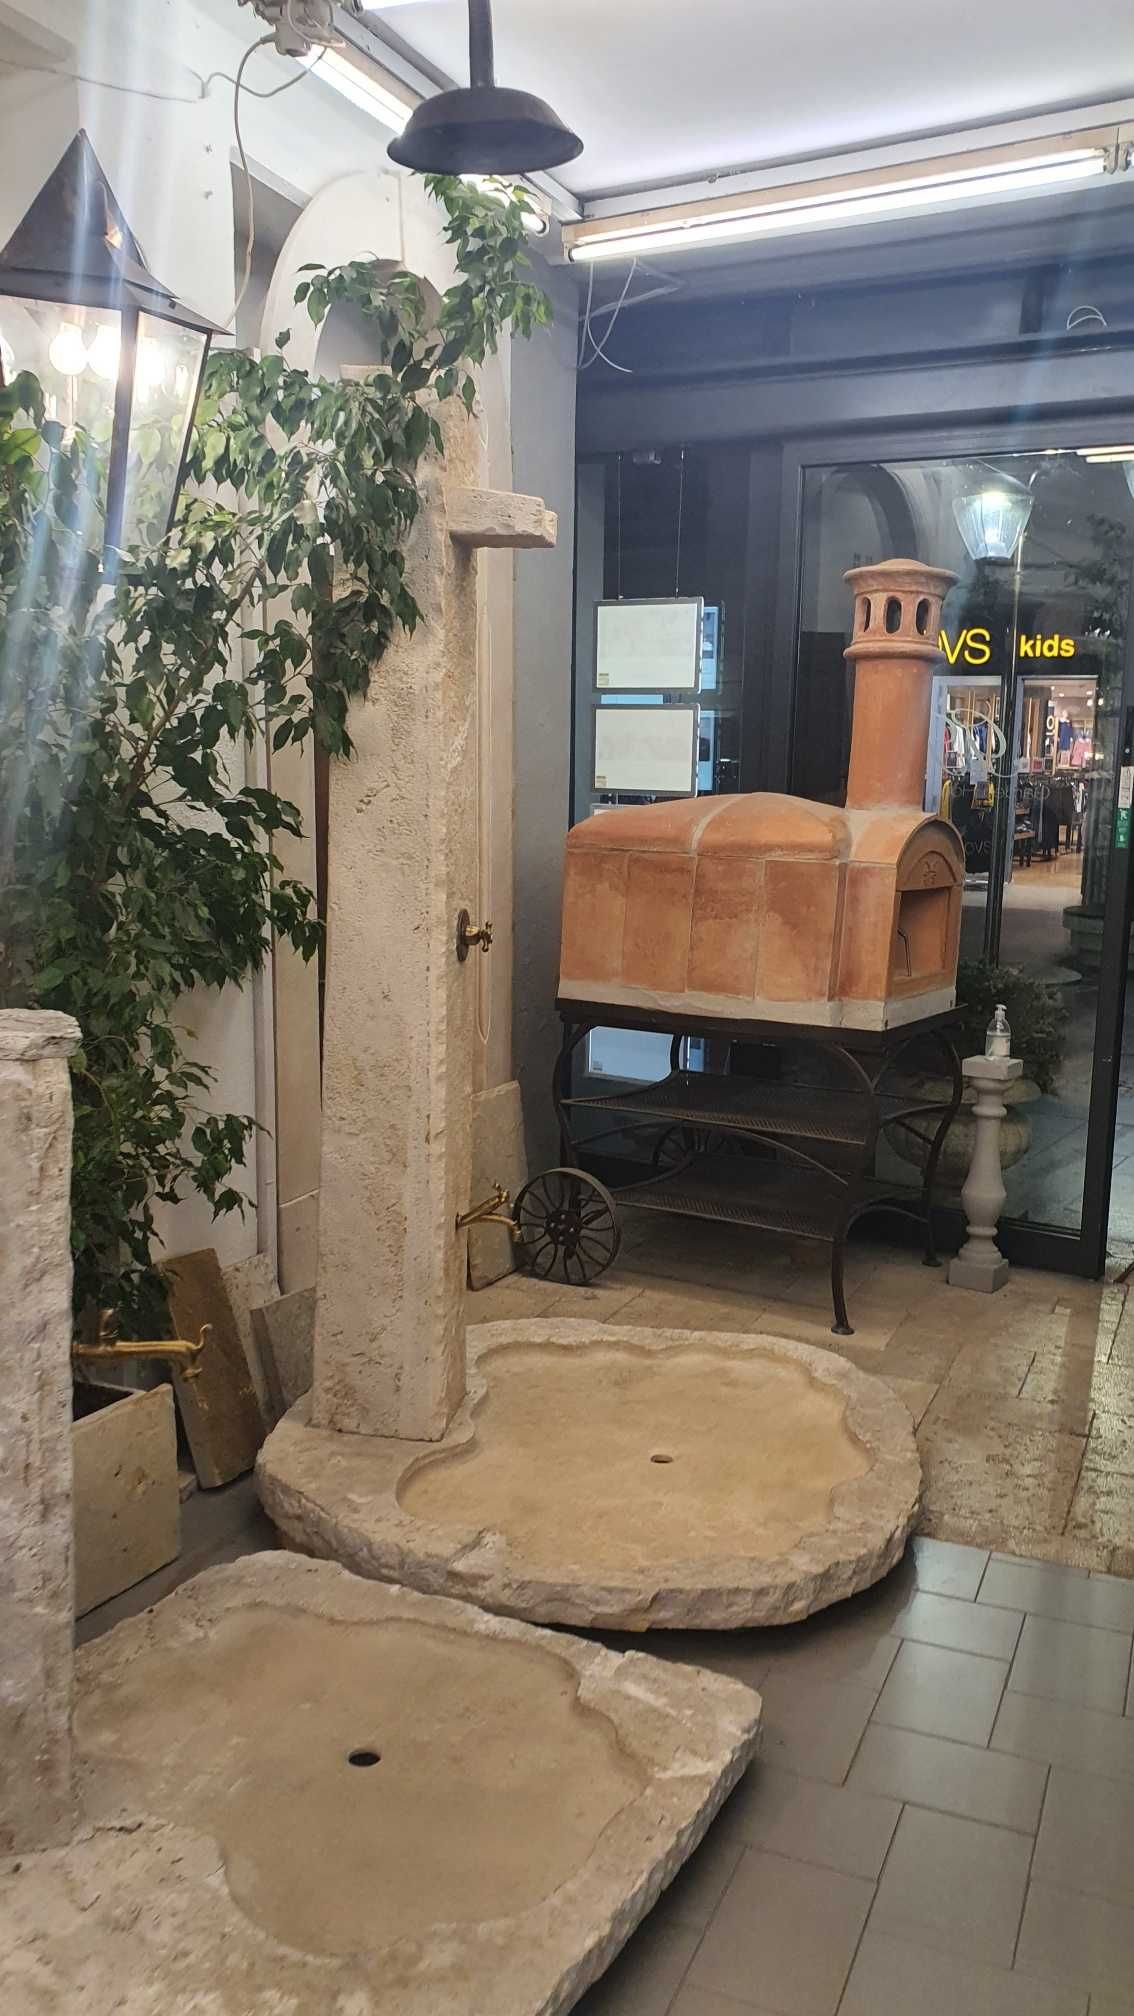 Toskański prysznic ogrodowy. Kolumna i brodzik kamień naturalny